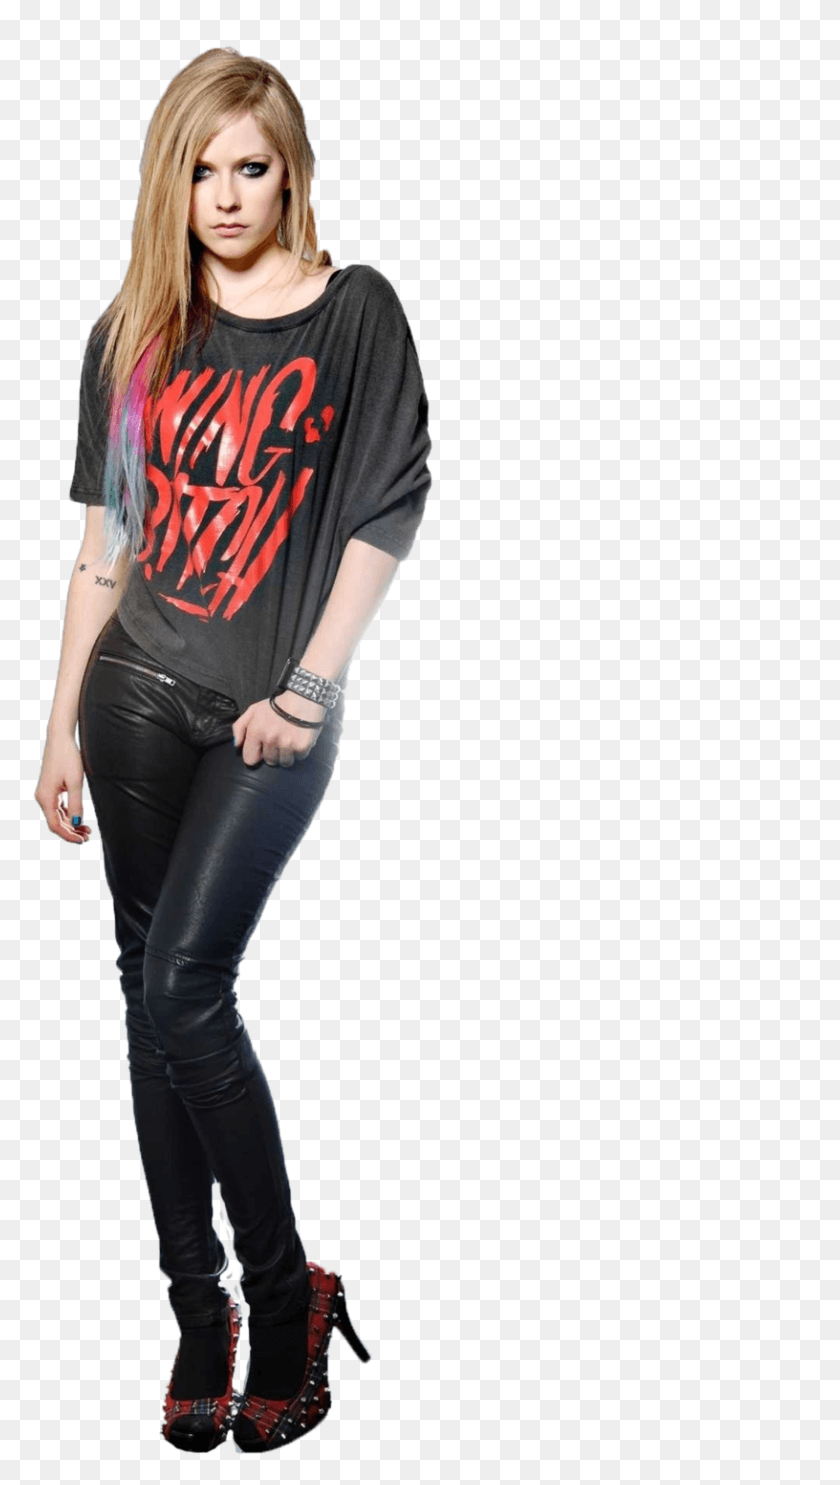 816x1491 Descargar Wwe Becky Lynch Avril Lavigne Rockstar Atuendo, Ropa, Persona Hd Png